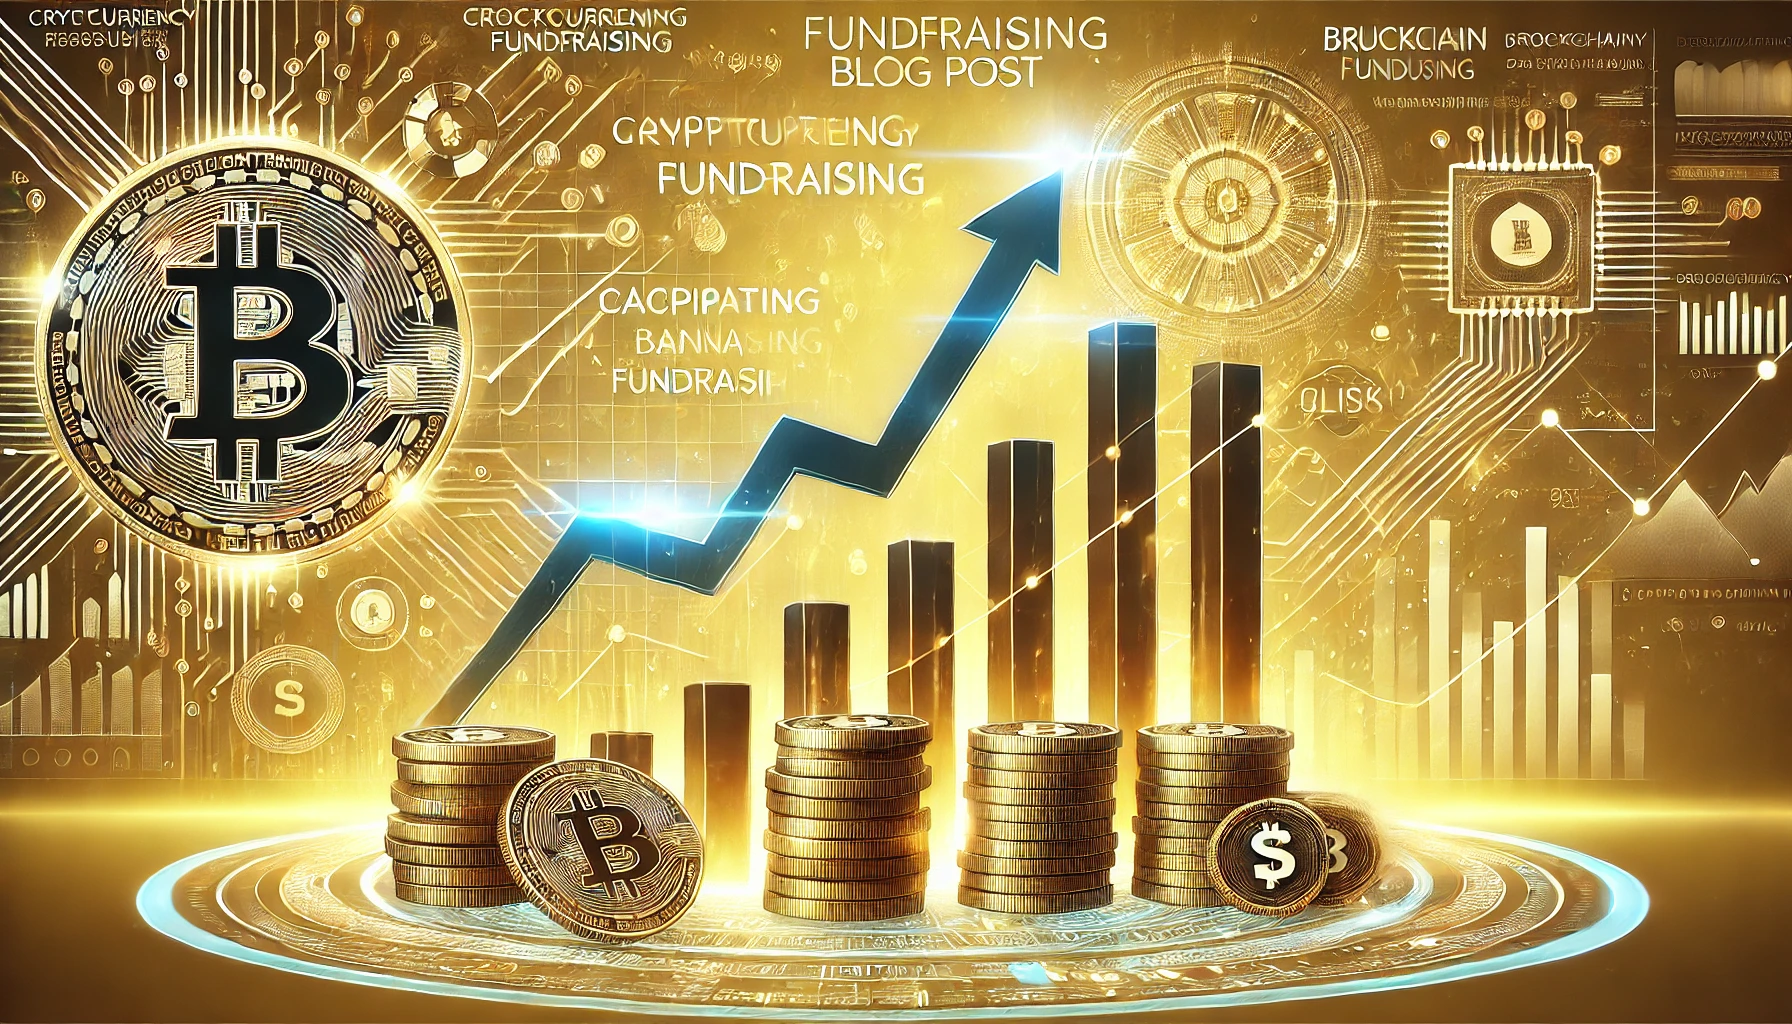 仮想通貨ファンドレーズのための横長バナー画像。金色の背景にブロックチェーングラフィック、デジタルコイン、上昇するグラフが描かれています。